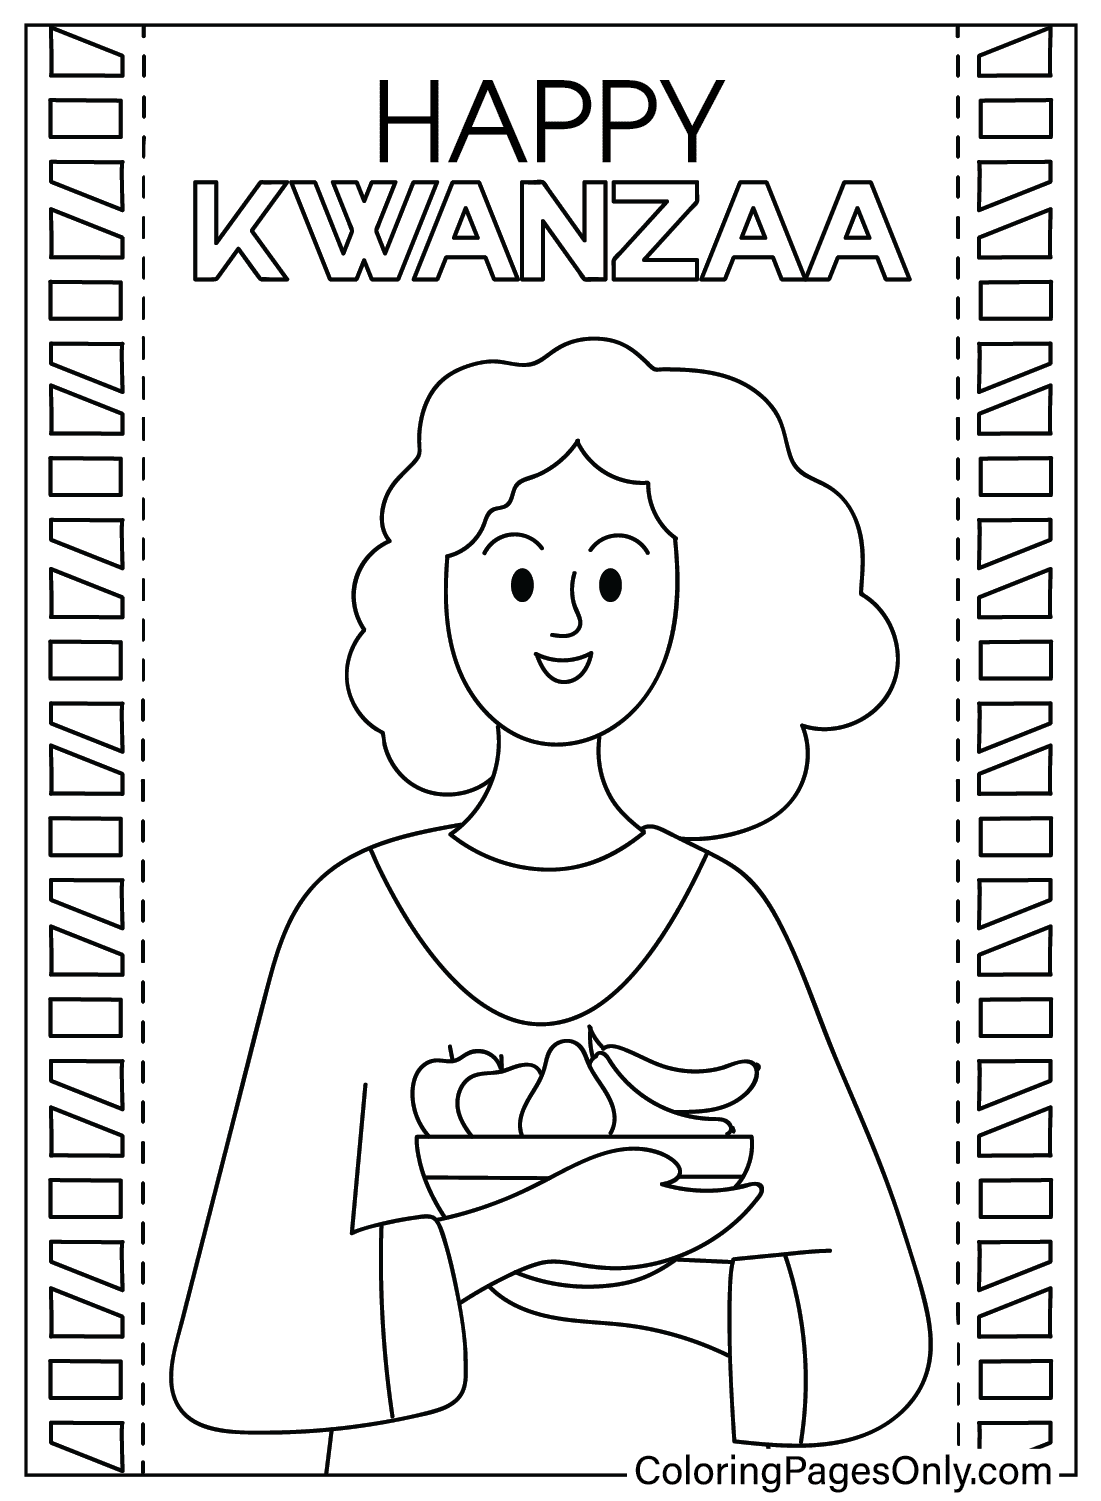 Página para colorear de Kwanzaa gratis de Kwanzaa